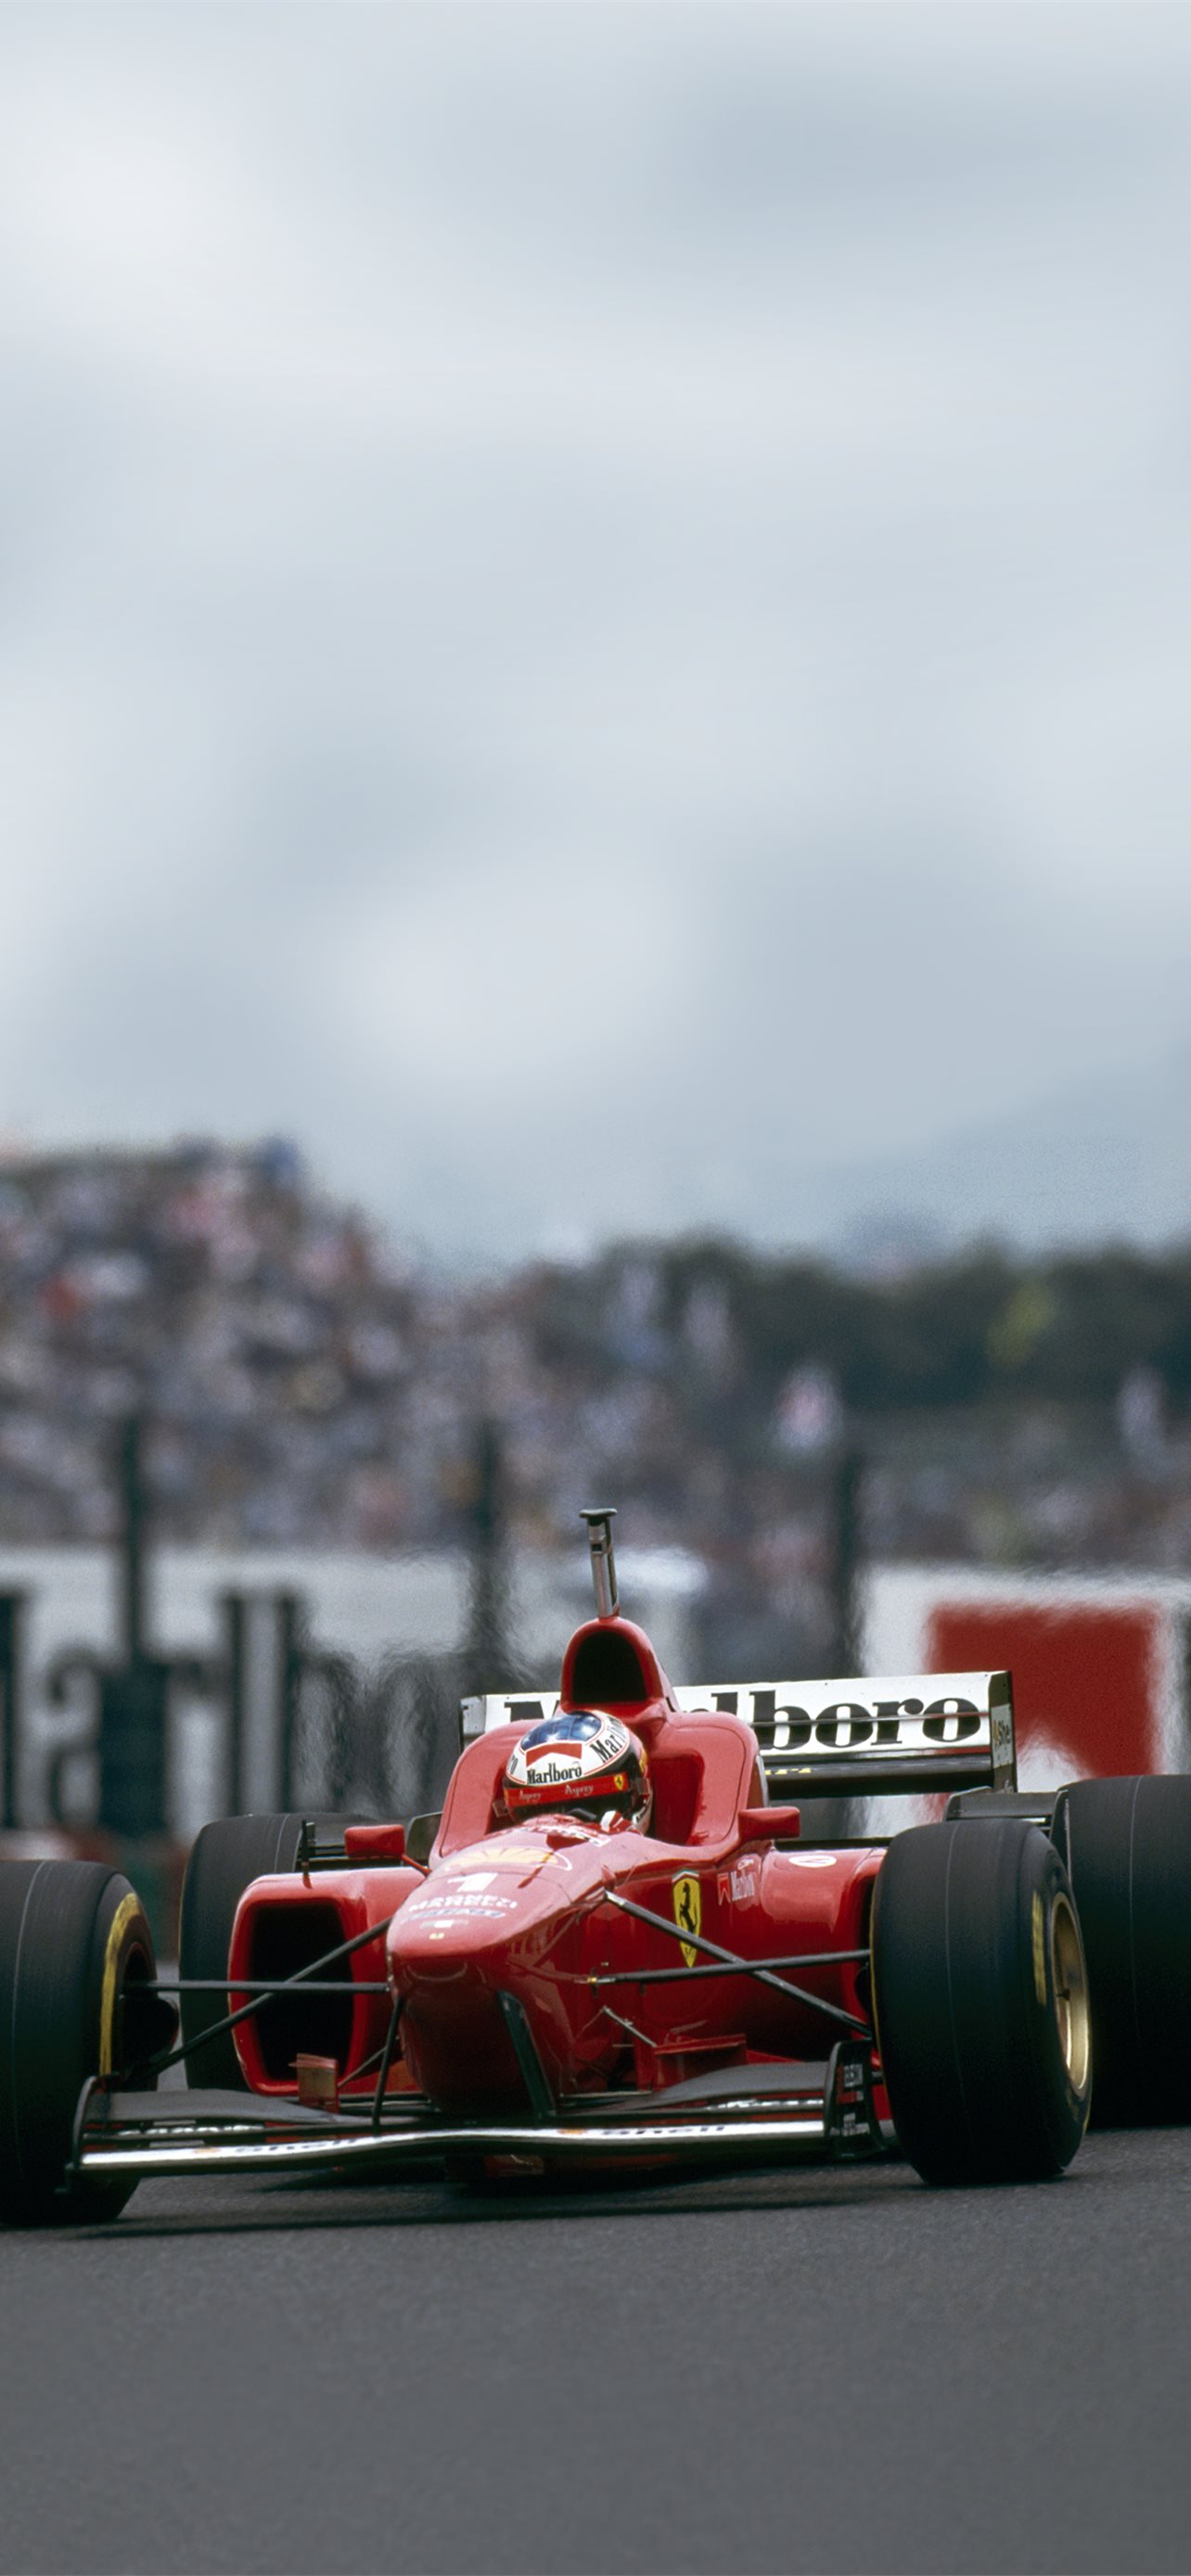 100+] Ferrari F1 Wallpapers | Wallpapers.com